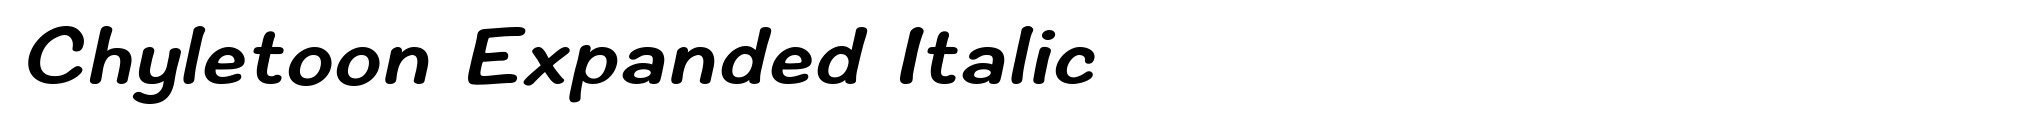 Chyletoon Expanded Italic image